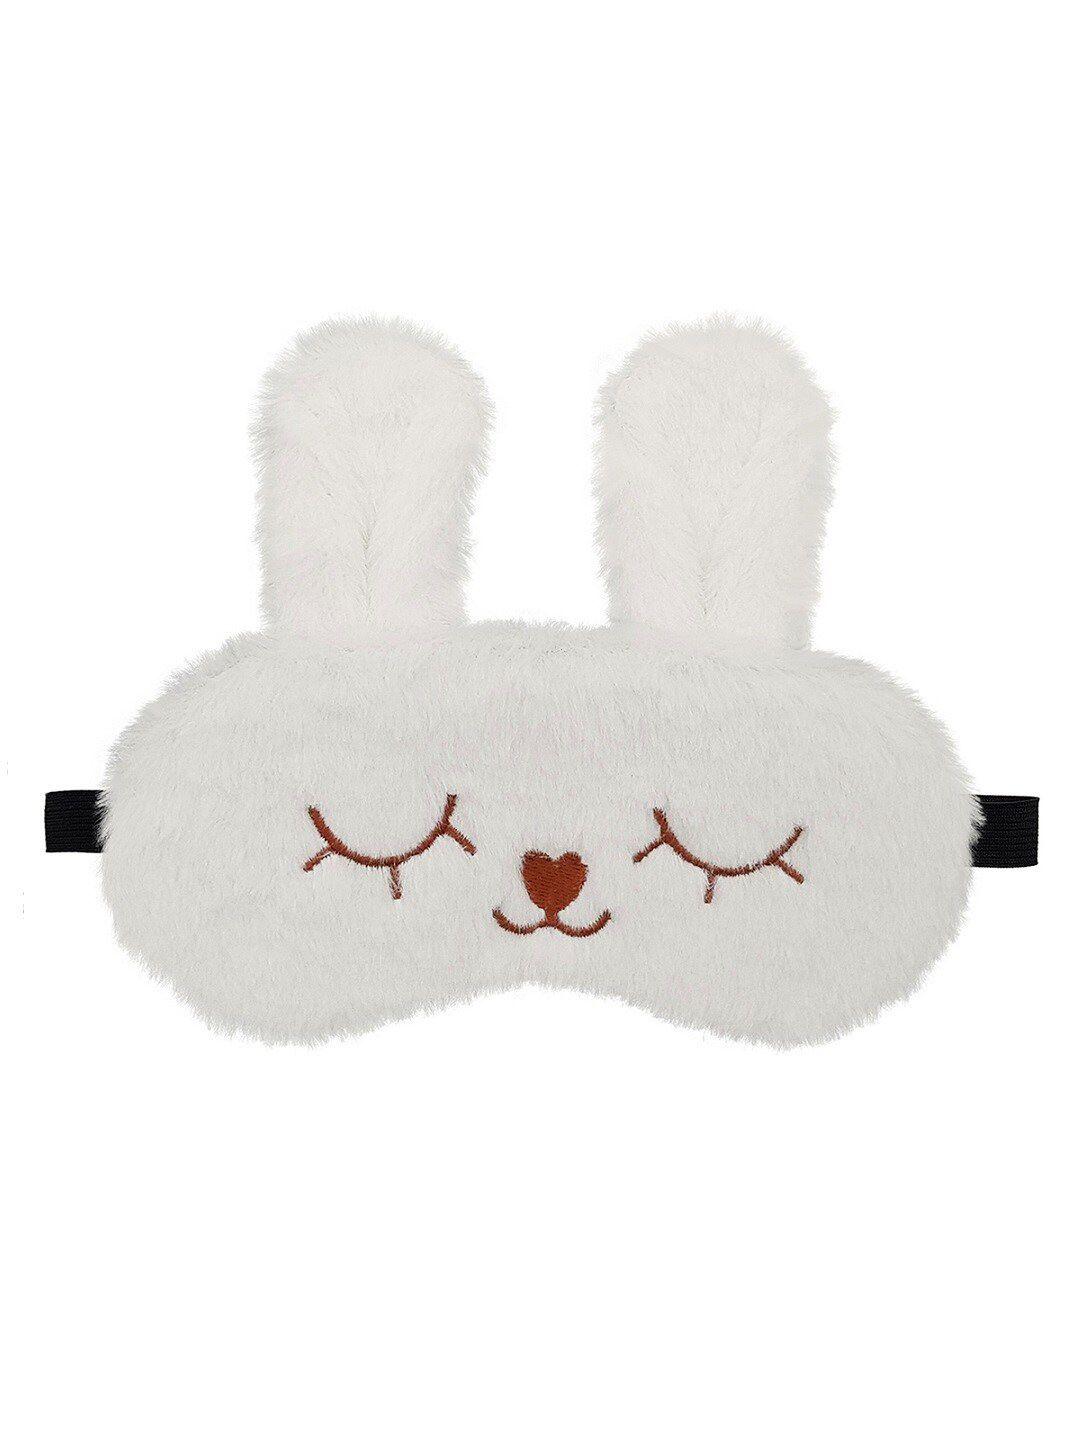 jenna unisex white solid bunny face sleeping eye mask